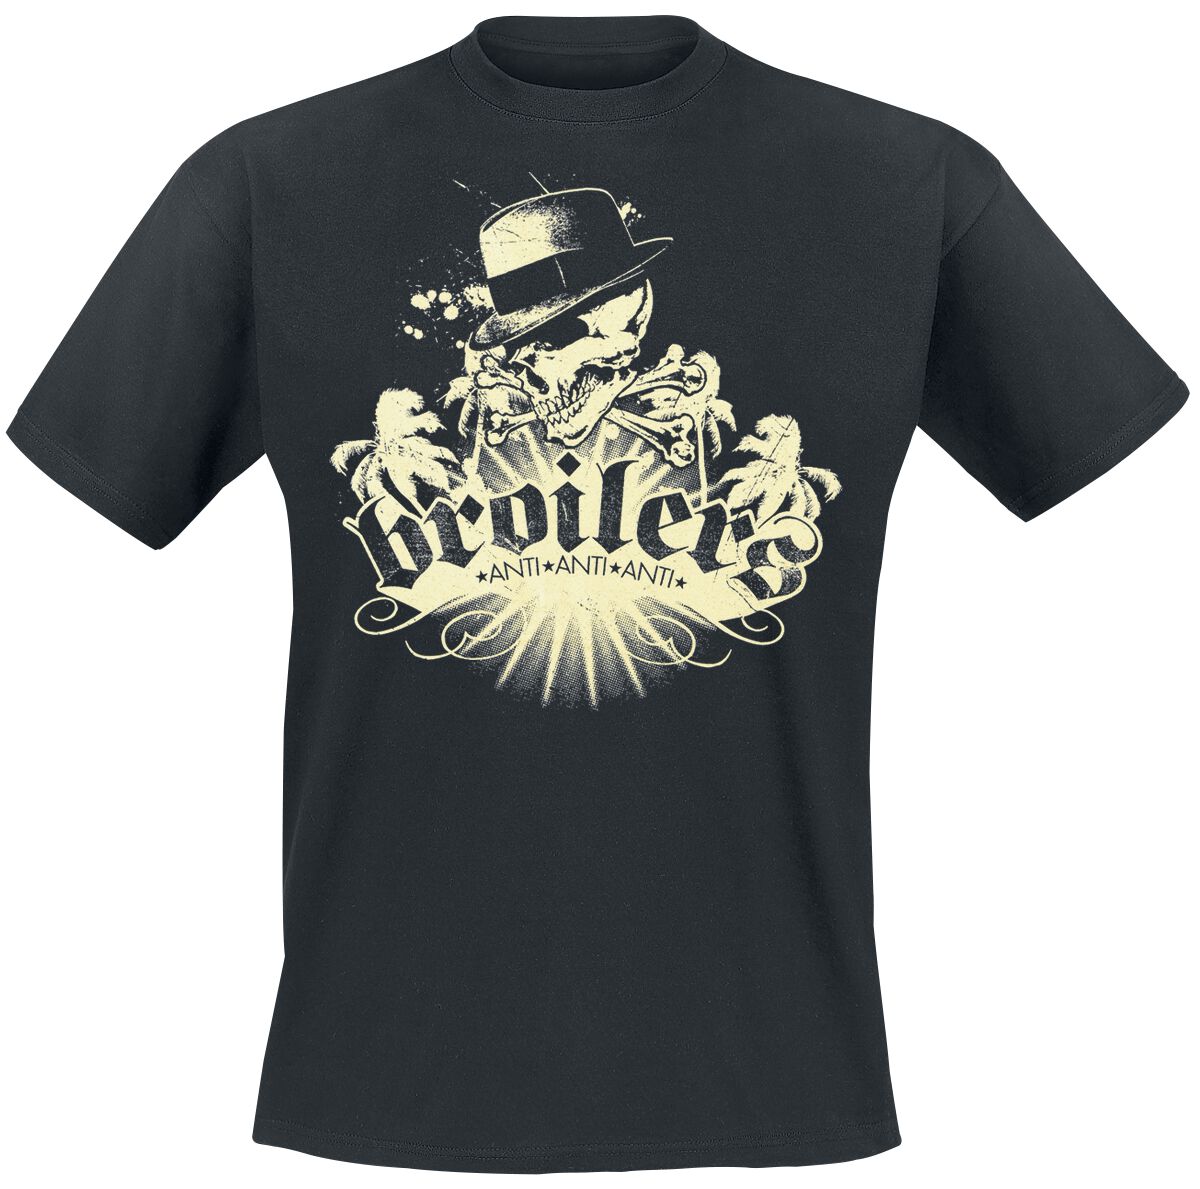 Broilers T-Shirt - Skull & Palms - S bis XXL - für Männer - Größe M - schwarz  - Lizenziertes Merchandise!